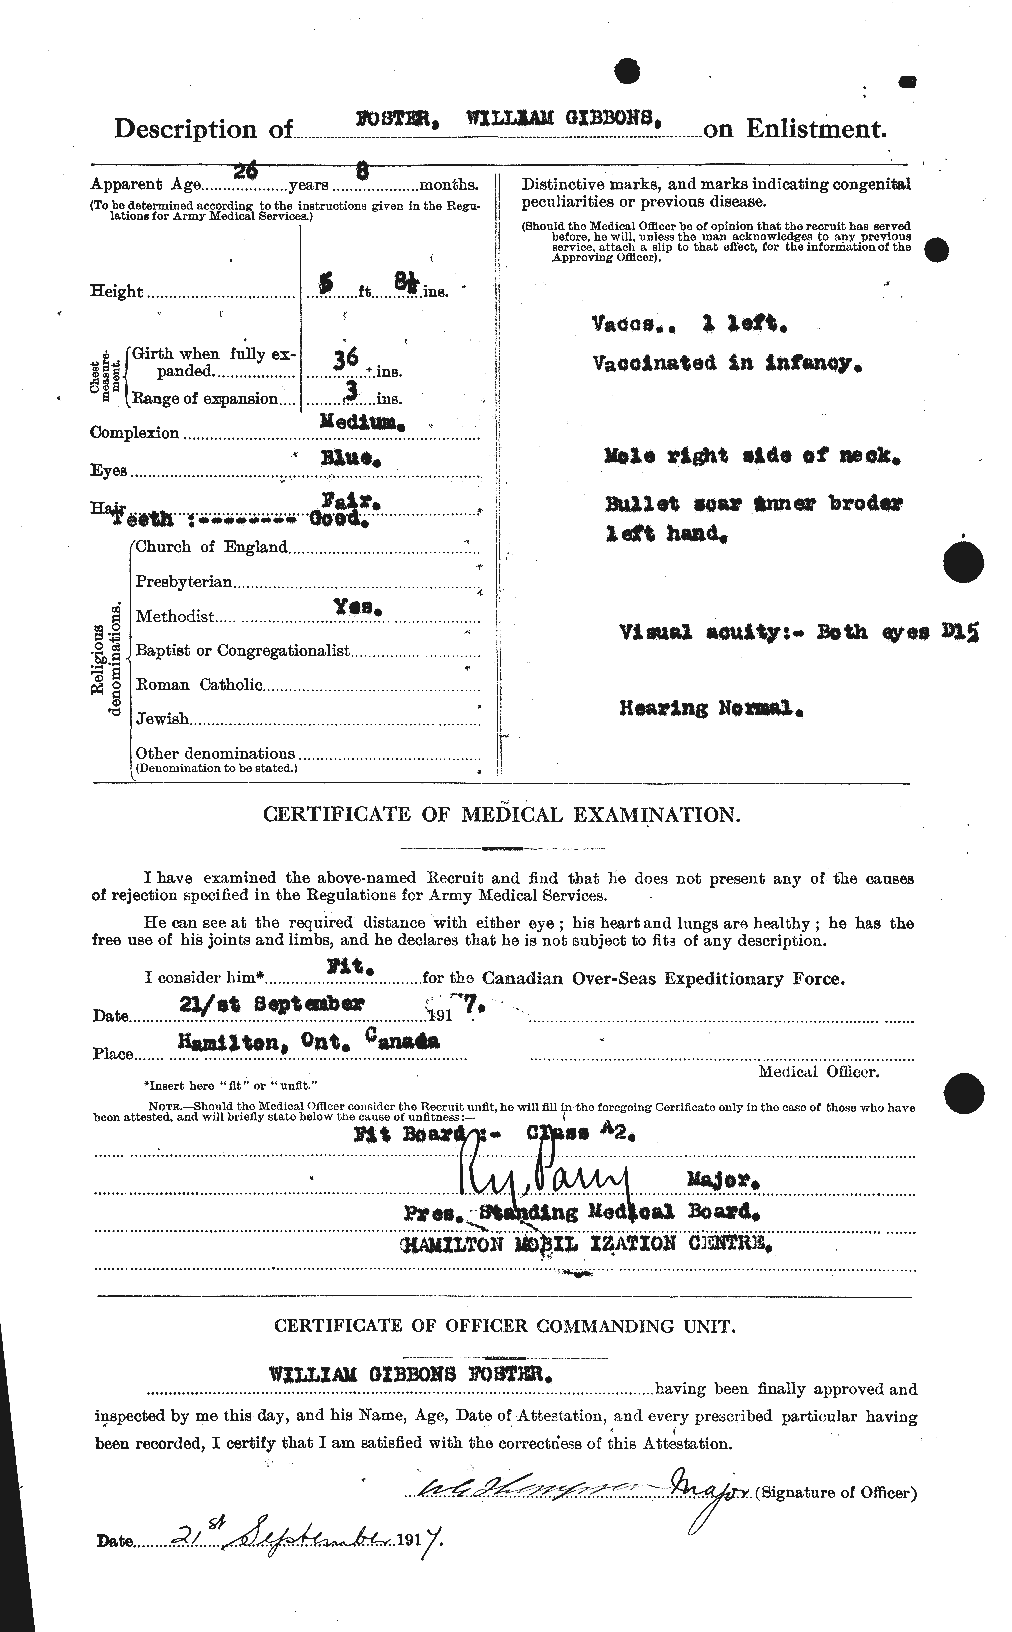 Dossiers du Personnel de la Première Guerre mondiale - CEC 328745b